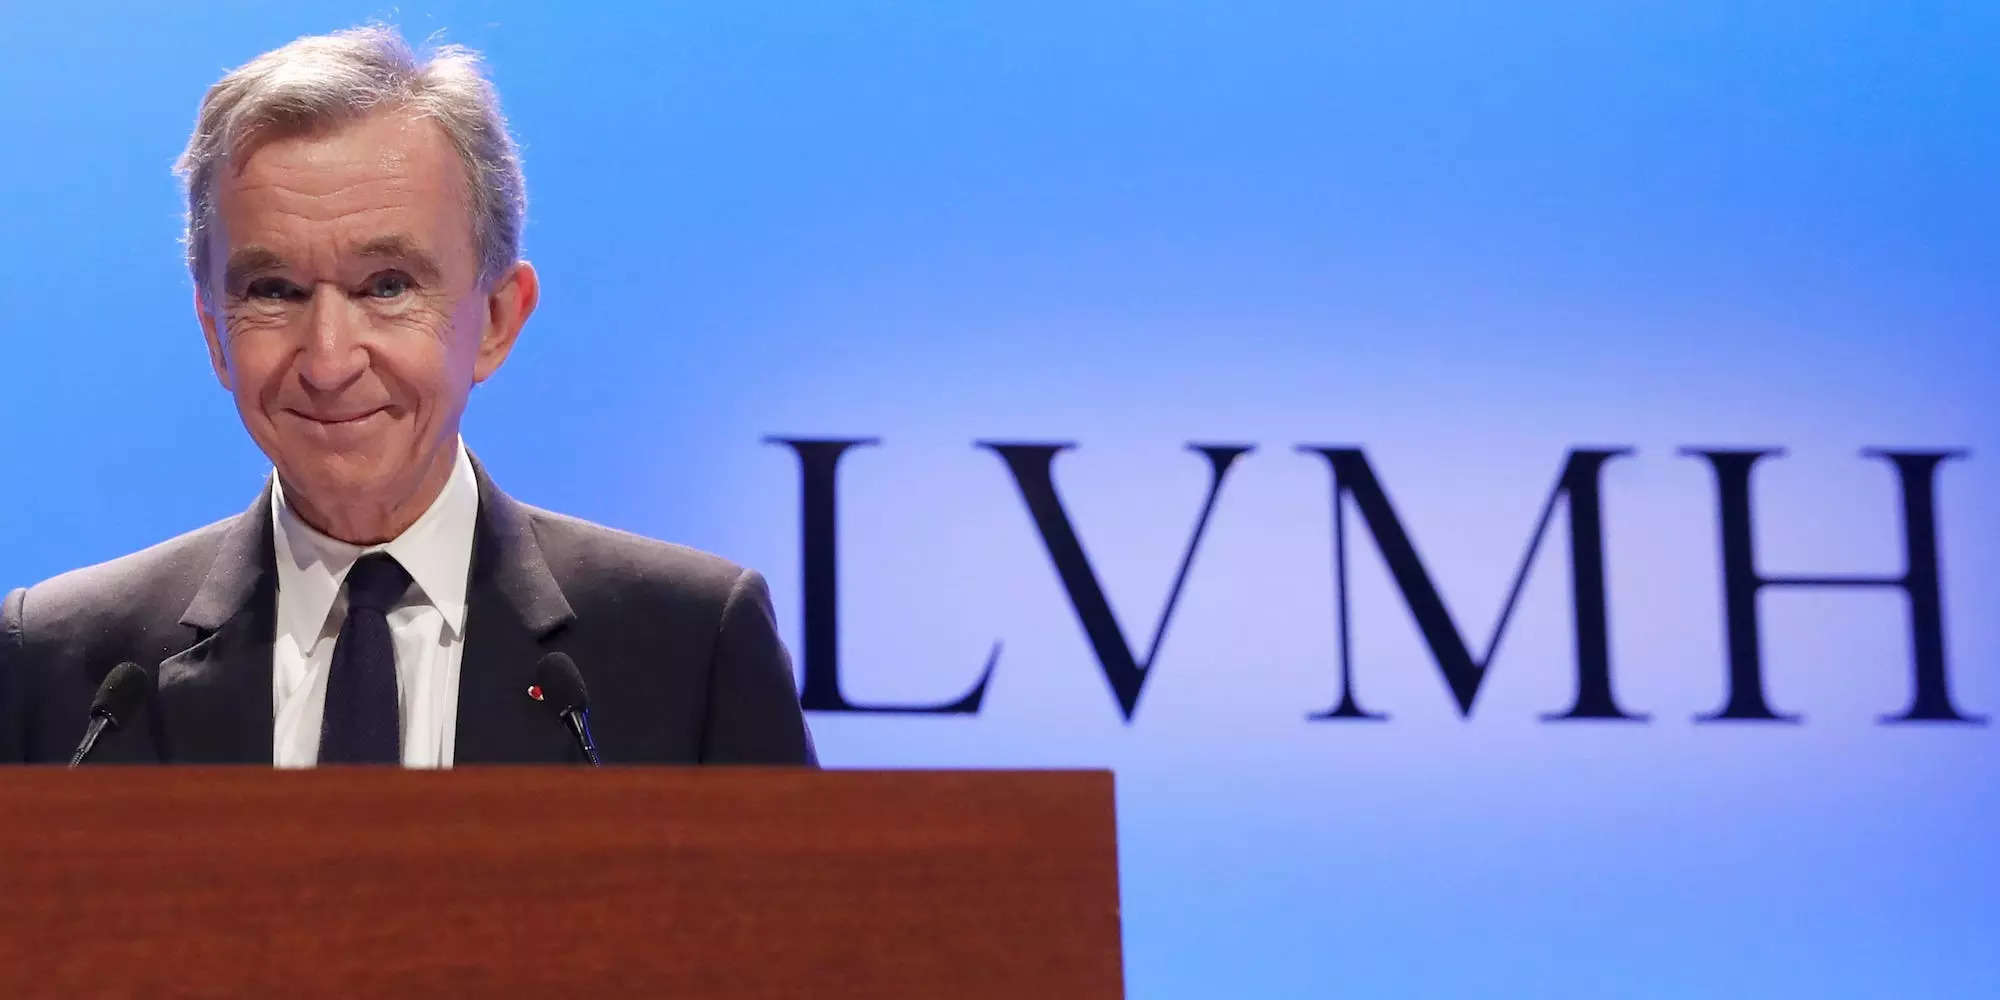 LVMH Billionaire Bernard Arnault Probed Over Possible Money Laundering